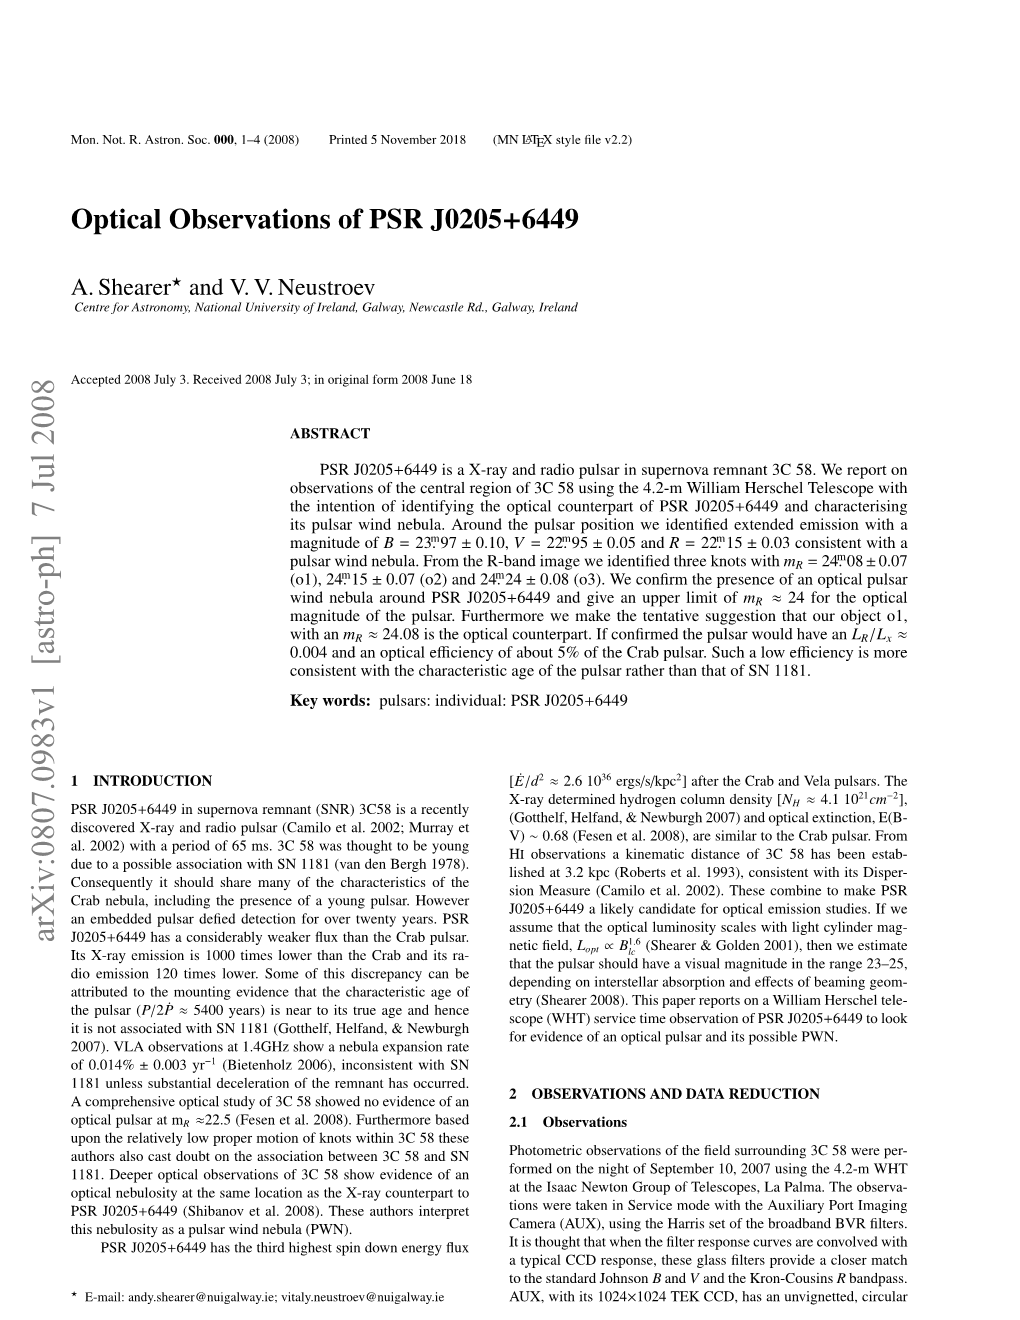 Optical Observations of PSR J0205+ 6449